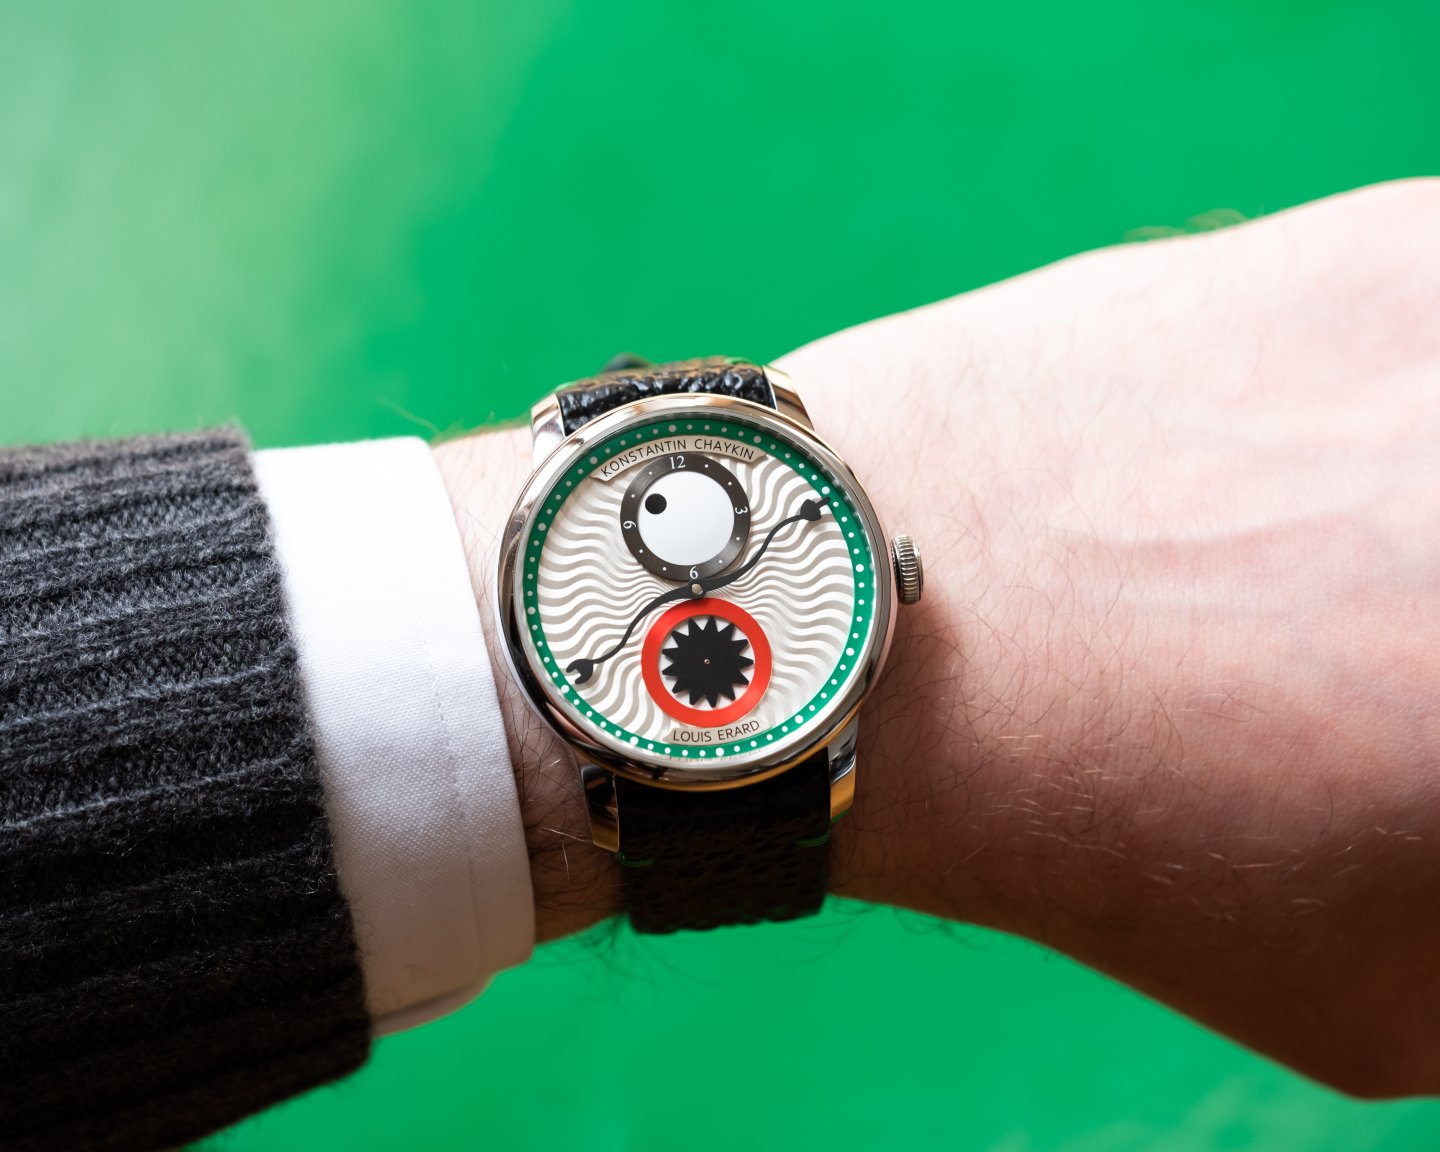 ルイ・エラール(Louis Erard)が エクセレンスシリーズの新作となる、独立時計師コンスタンチン・チャイキンとのコラボレーションモデルを発表。